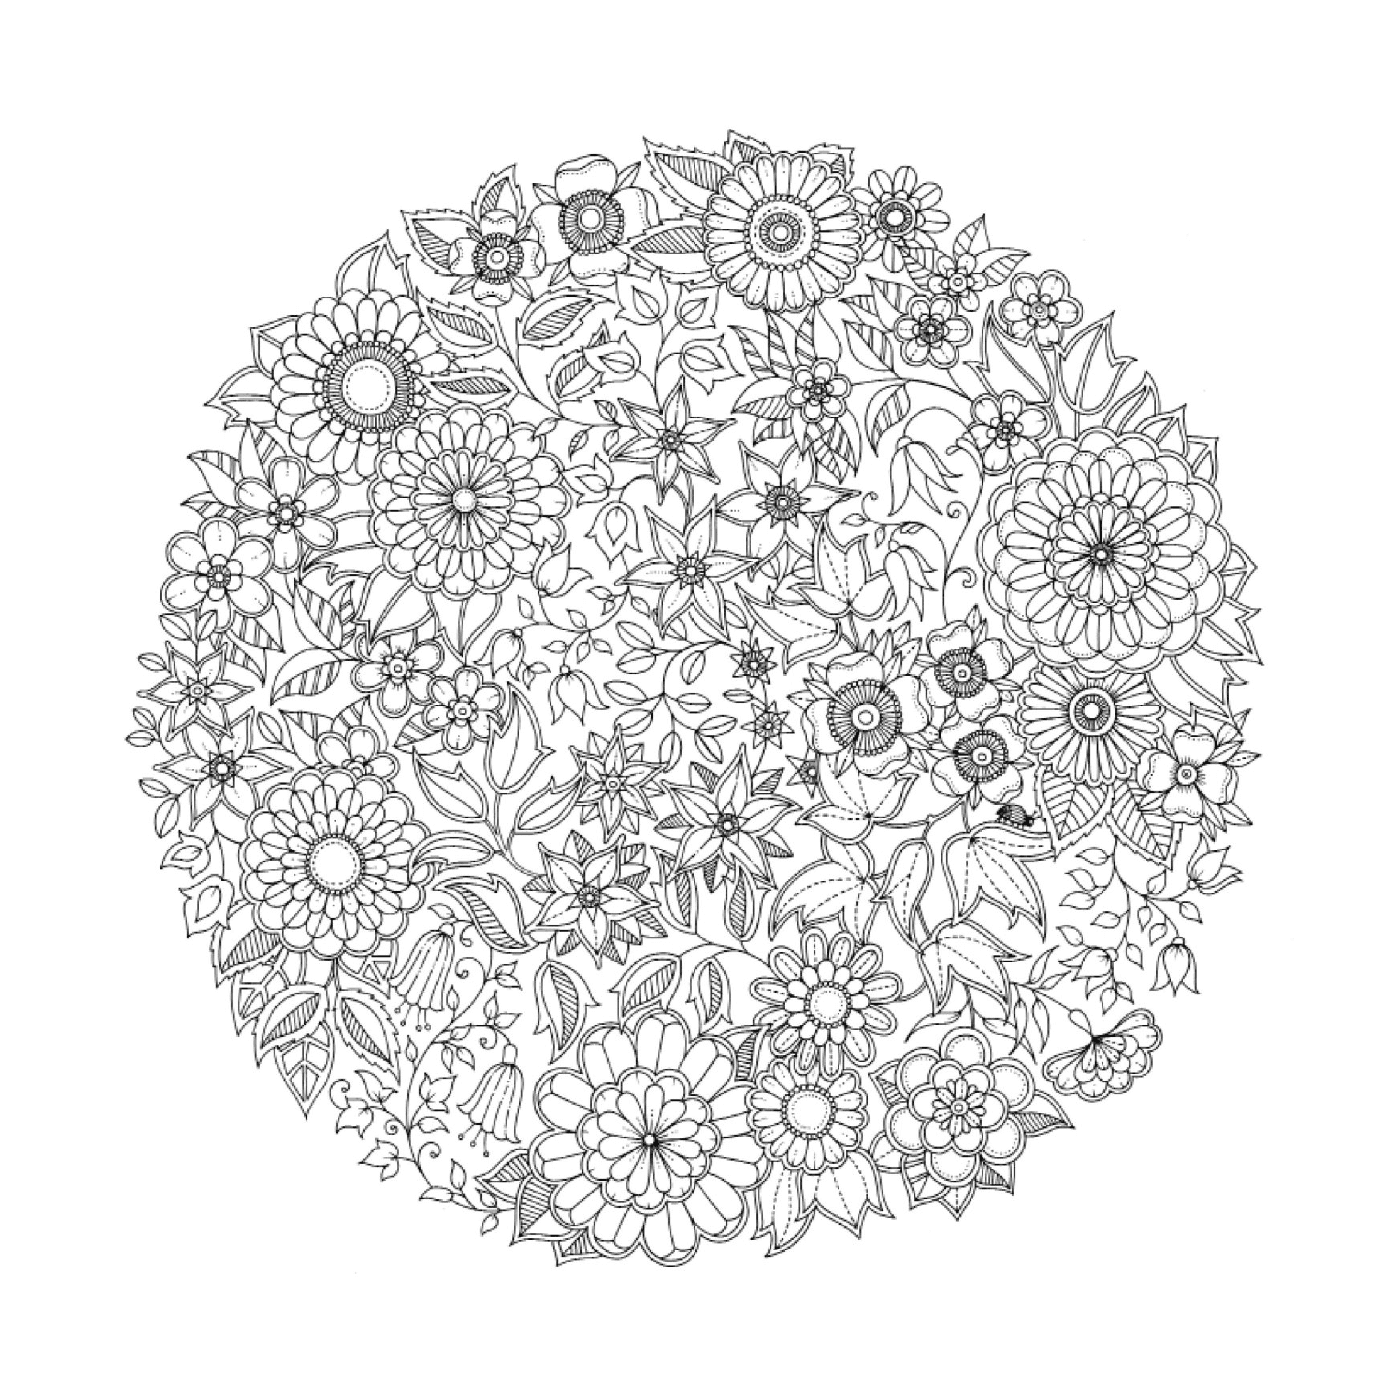  un patrón circular de flores en blanco y negro difícil de identificar 